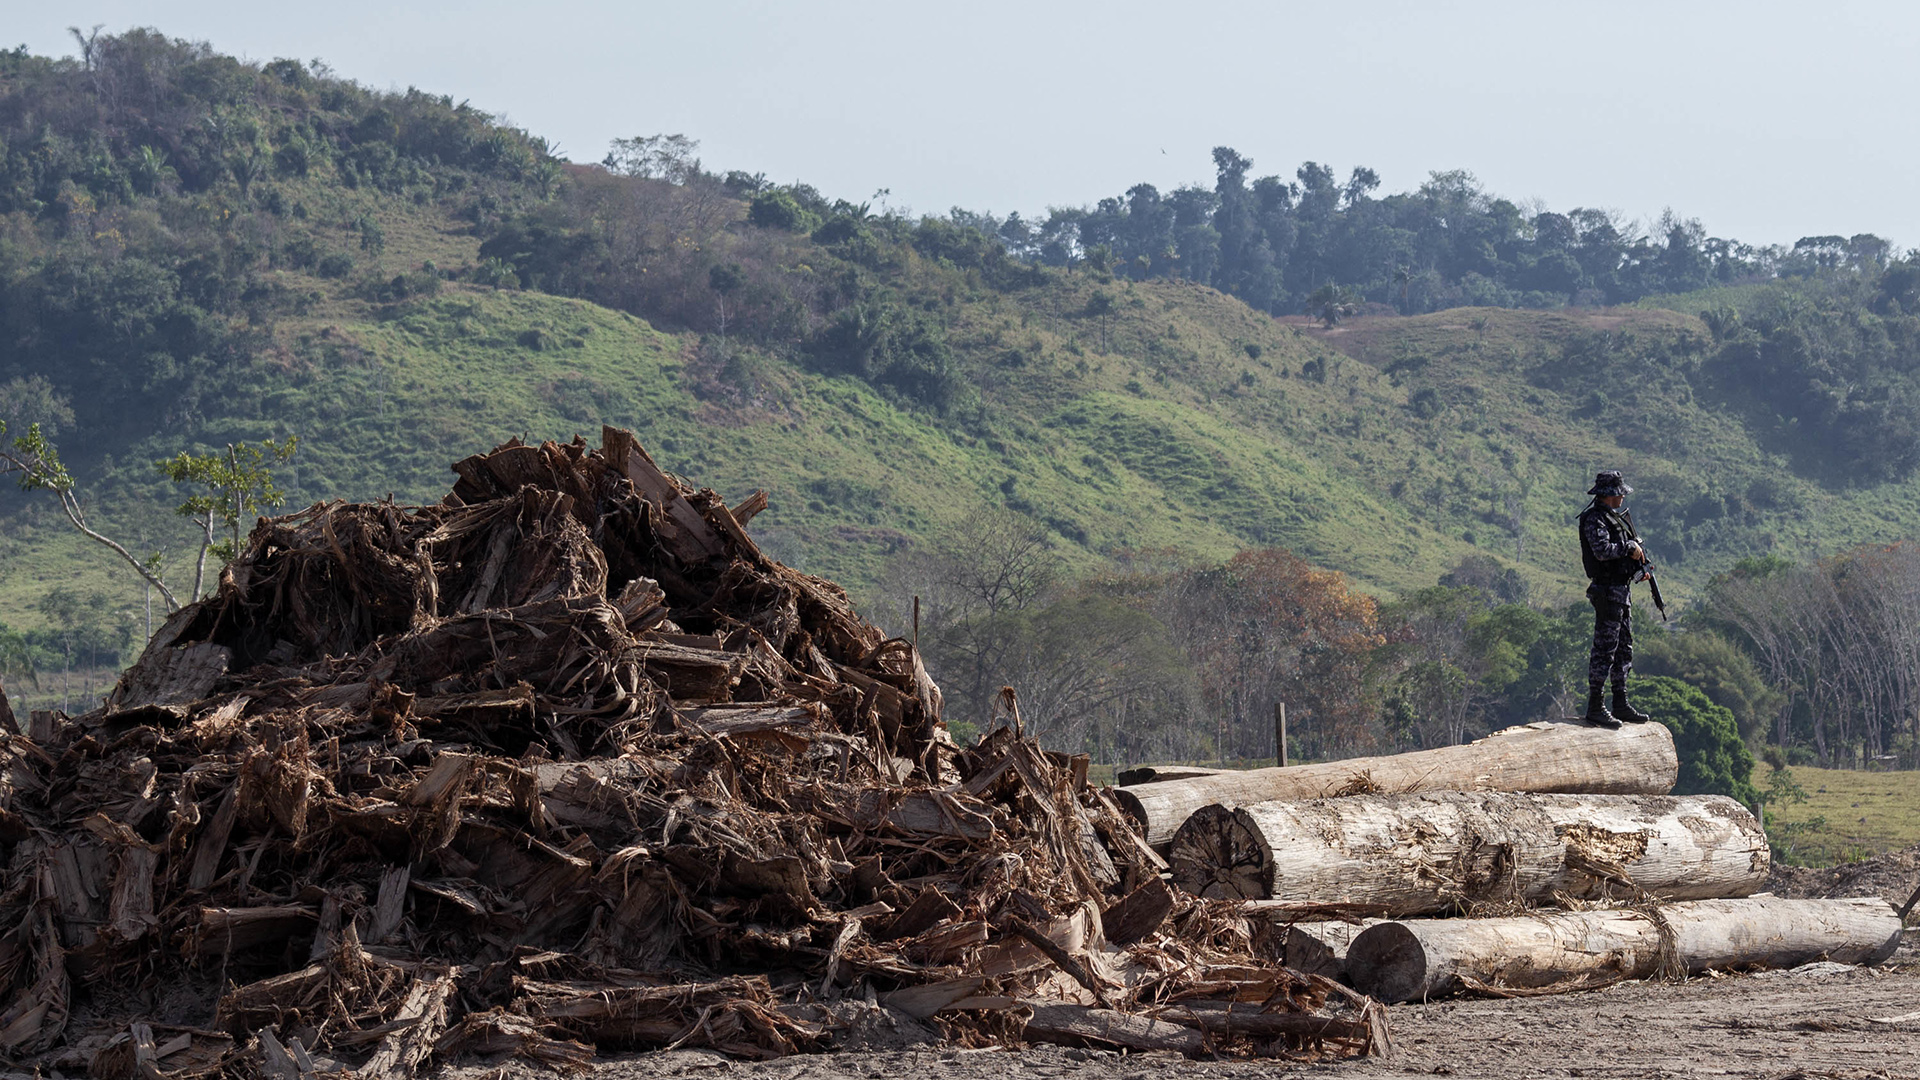 Brasilien, Rondonia: Auf diesem vom brasilianischen Umweltinstitut zur Verfügung gestelltes Bild bewacht ein Soldat Bäume, die illegal gefällt wurden. | picture alliance/dpa